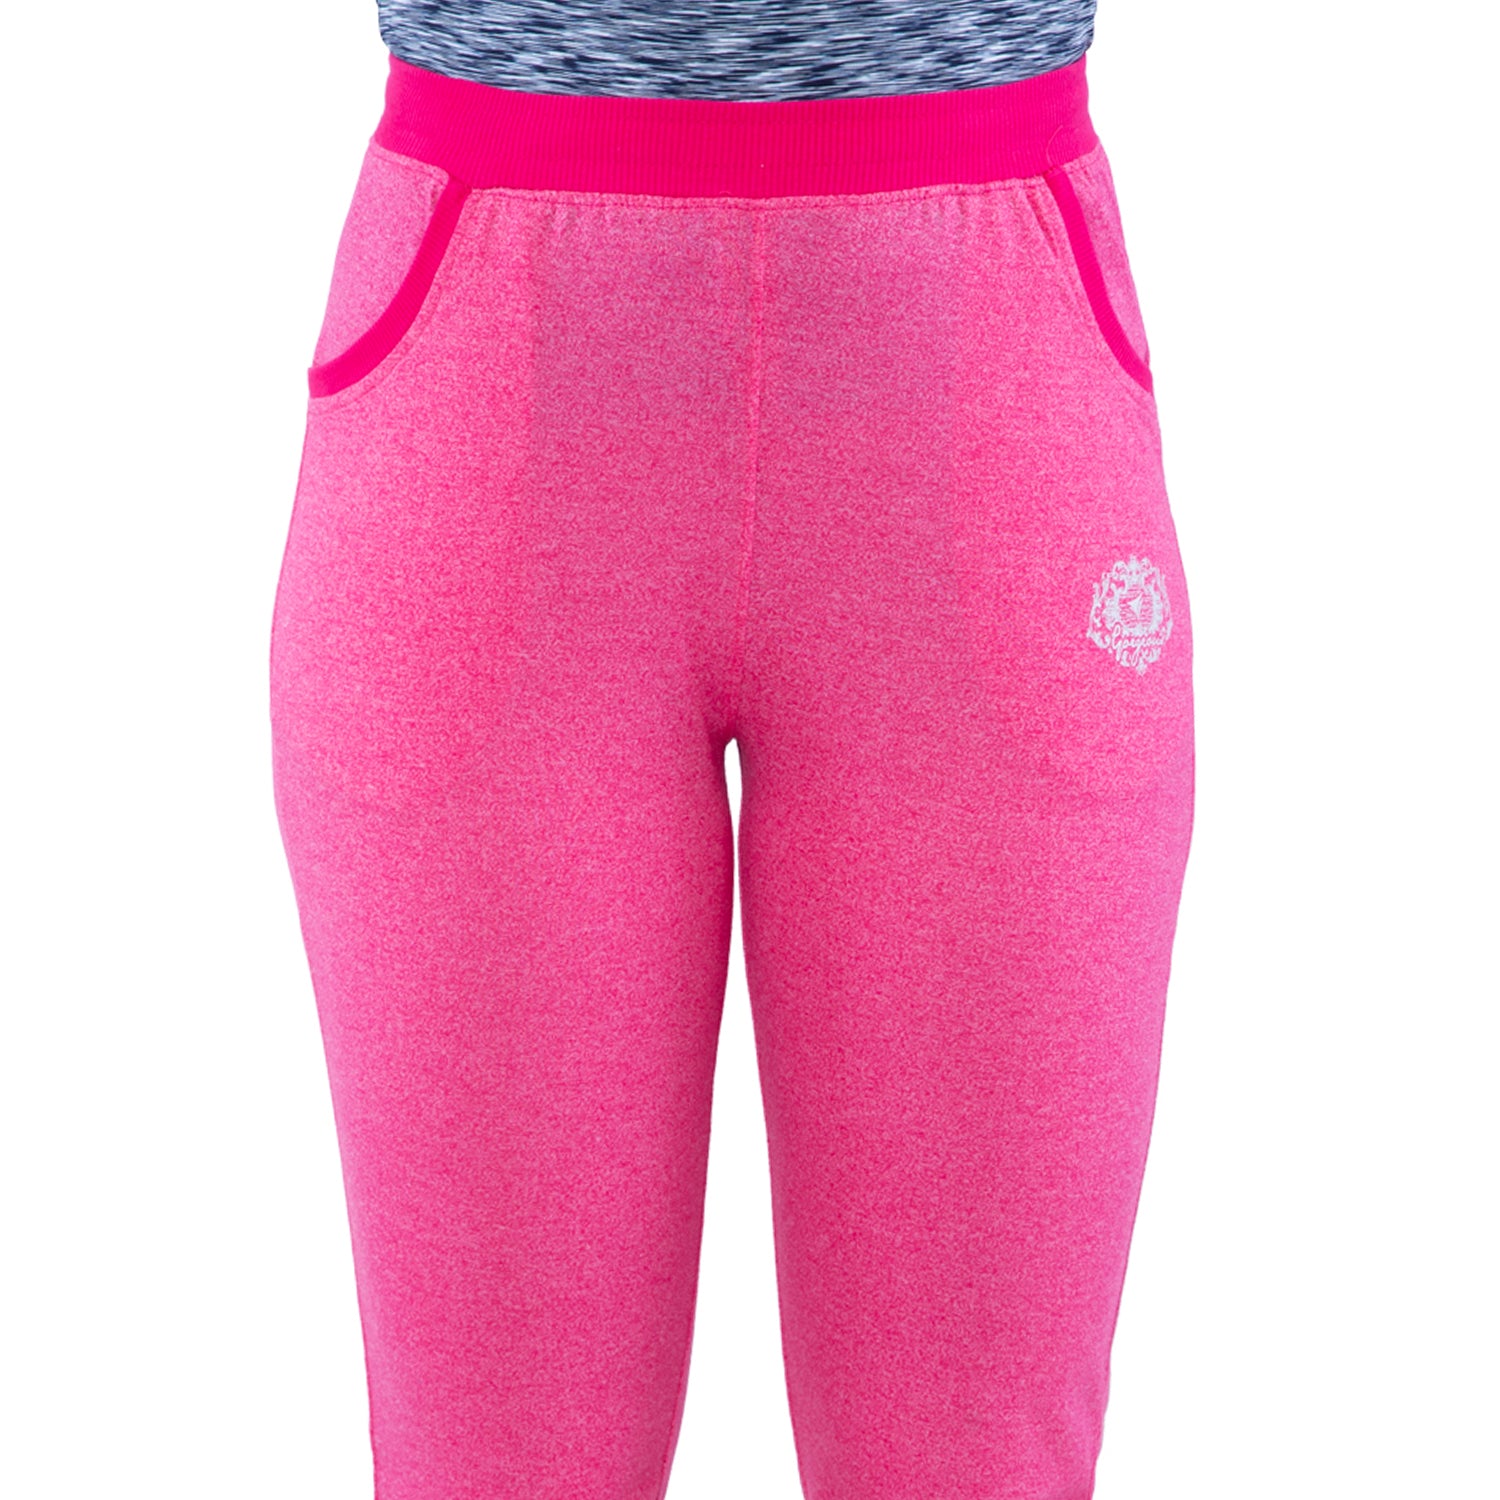 Neva Women's Track Pant - Hot Pink – Neva Clothing India